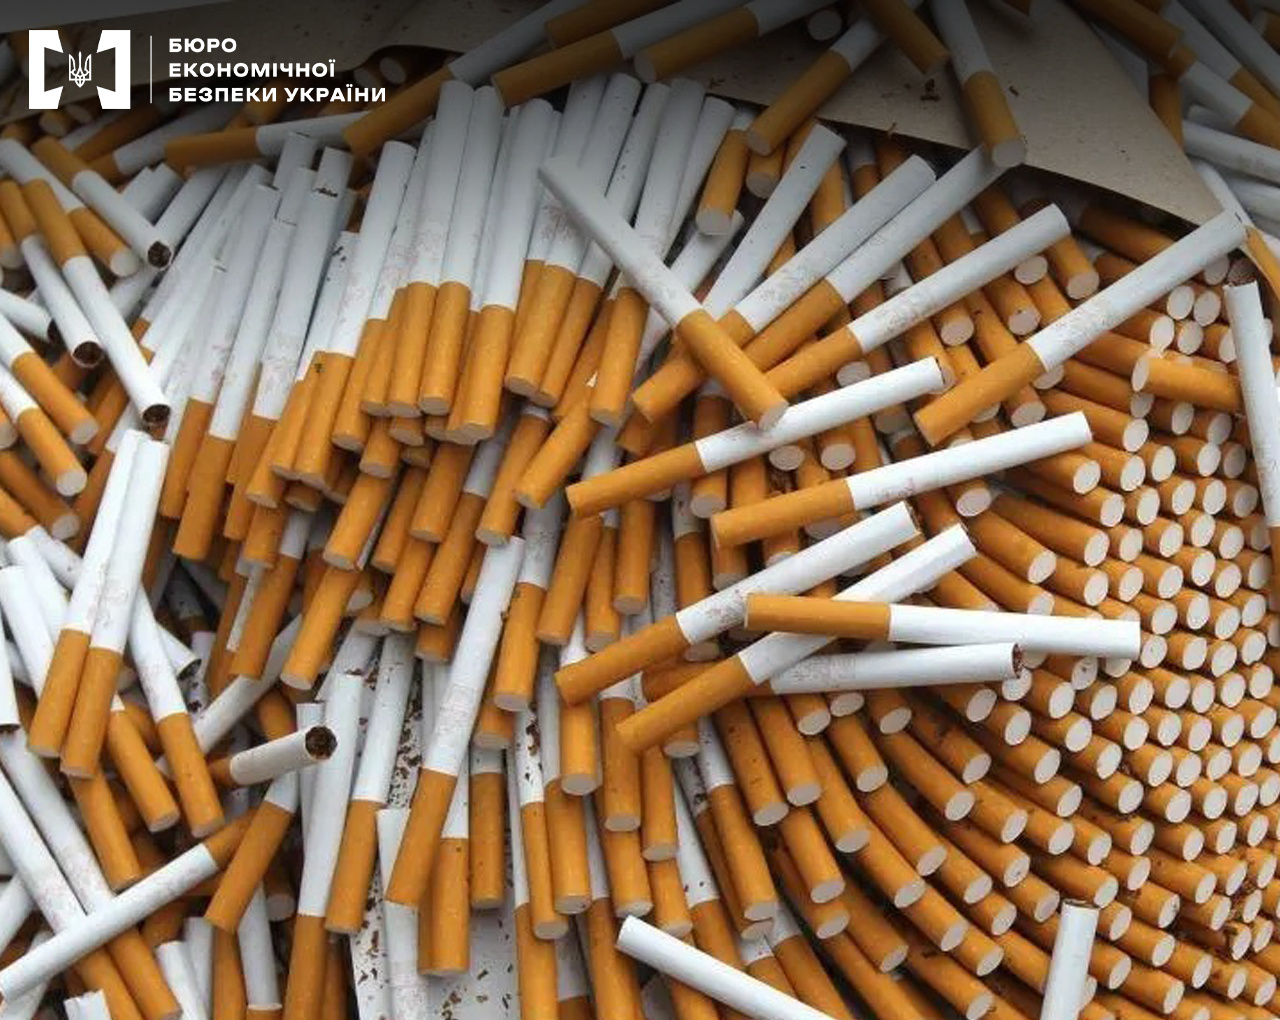 (Ua) Бюро економічної безпеки скерувало до суду справу за зберігання контрафактних сигарет